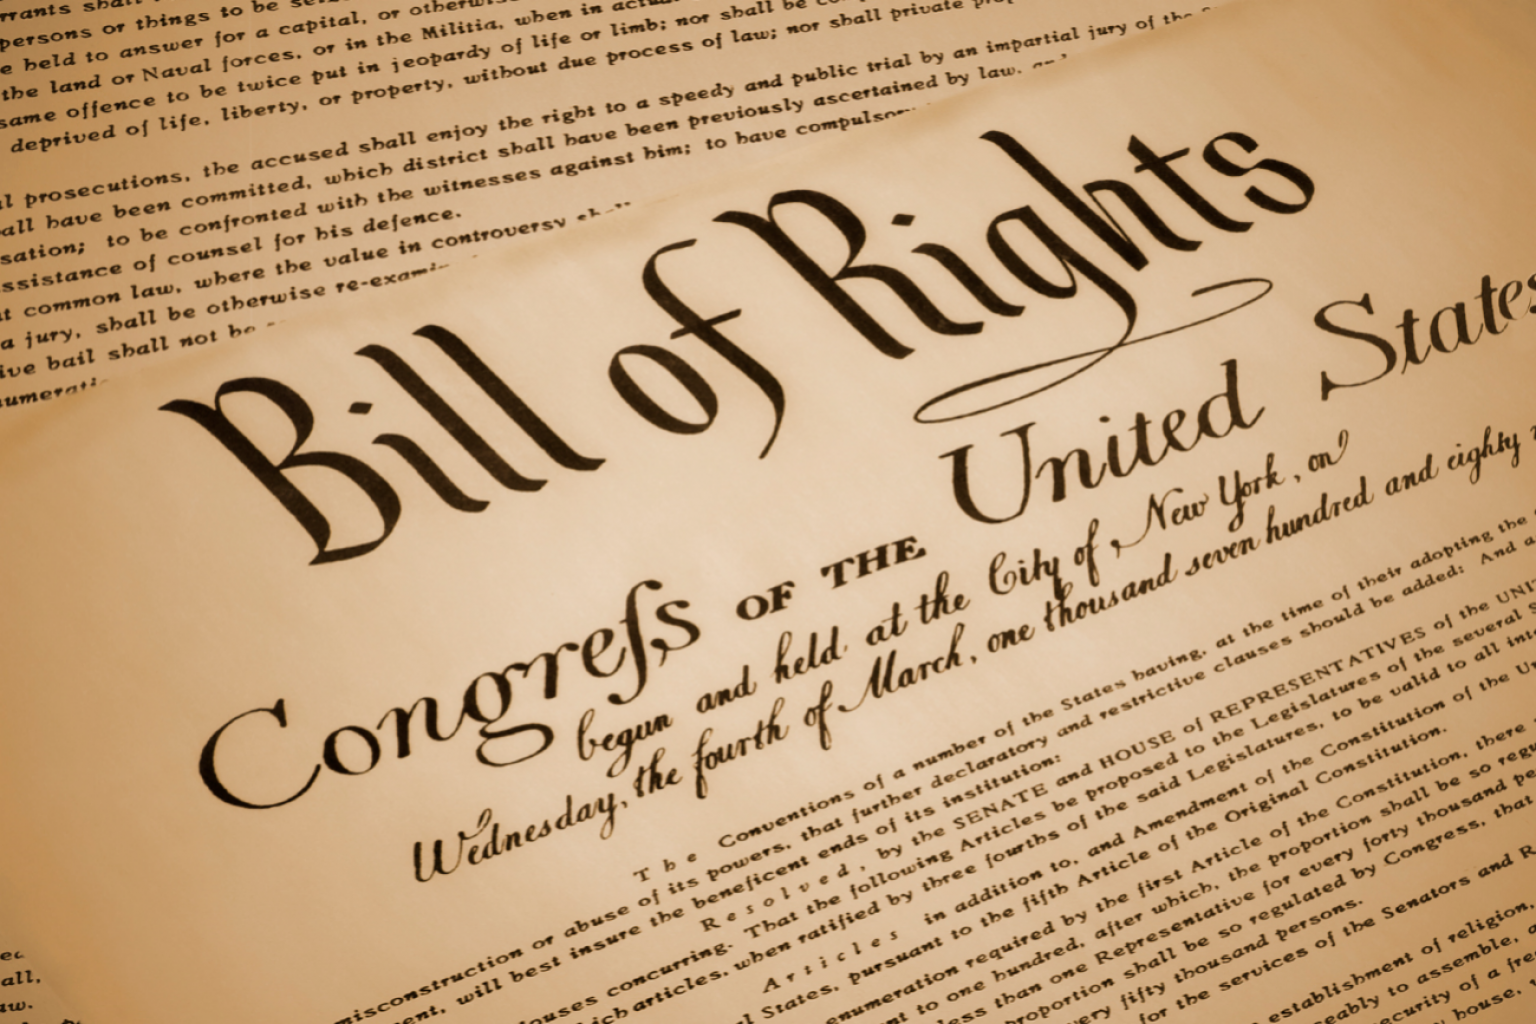 Bill of Rights Day: December 15, 2019